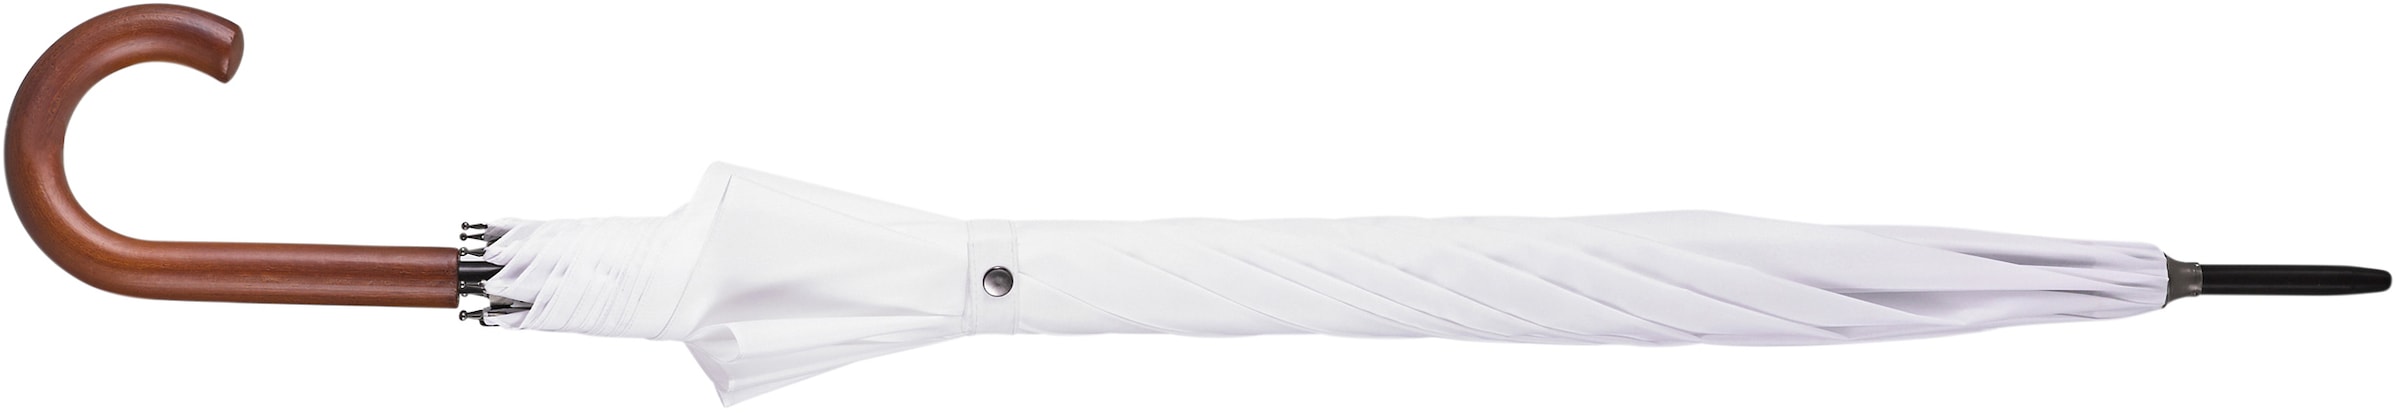 EuroSCHIRM® Partnerschirm »Automatik W130, weiß«, Regenschirm für Zwei, mit Automatik, Griff aus Holz, extra großes Dach